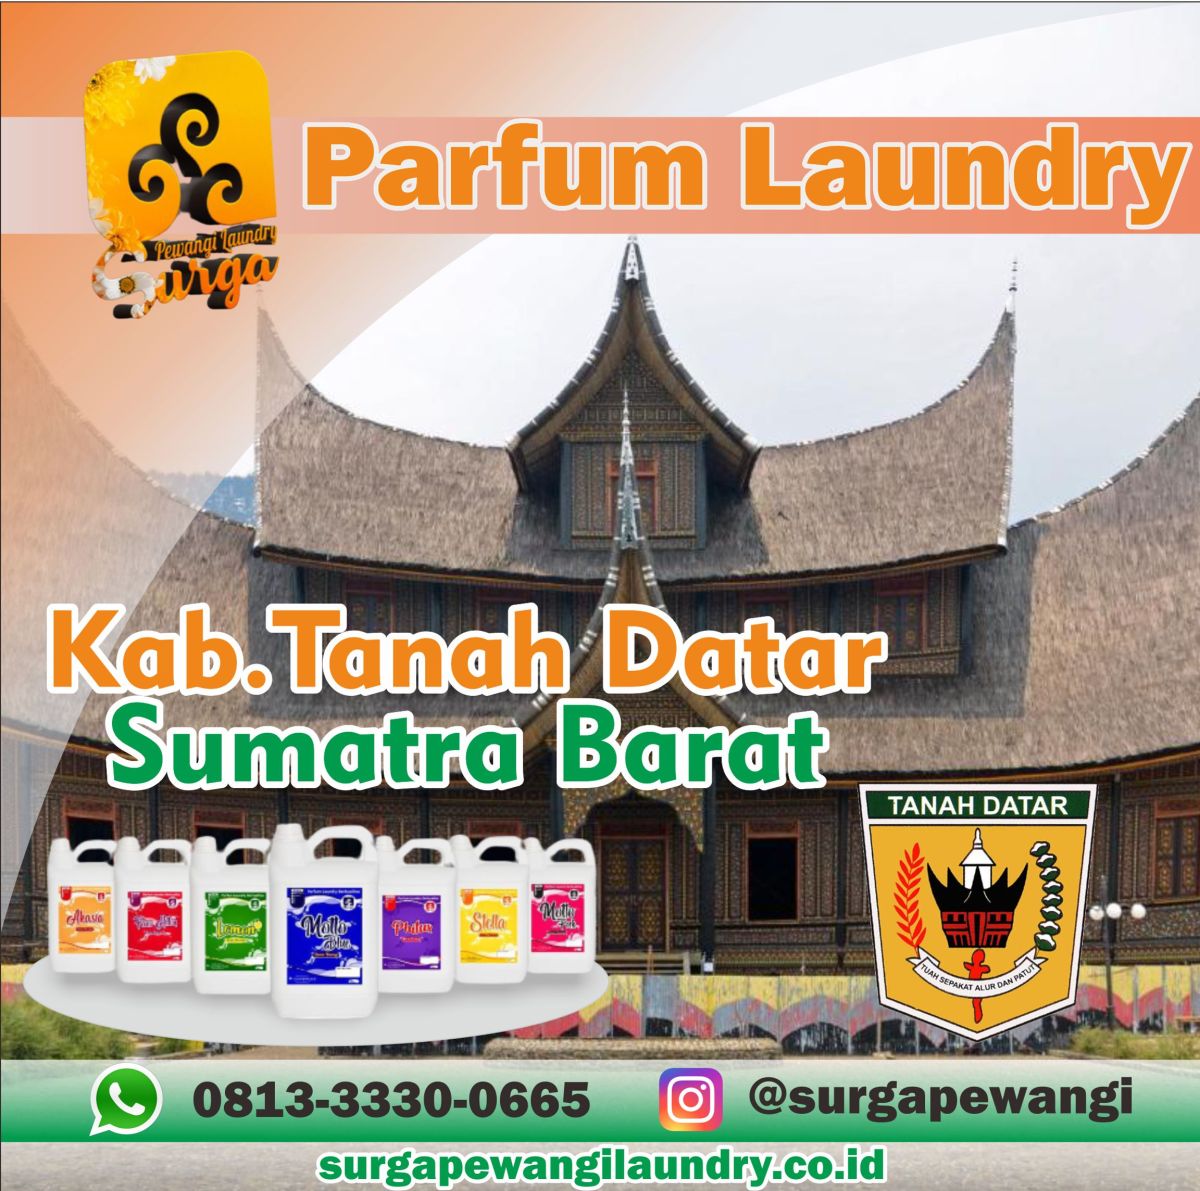 Parfum Laundry Kabupaten Tanah Datar, Sumatra Barat